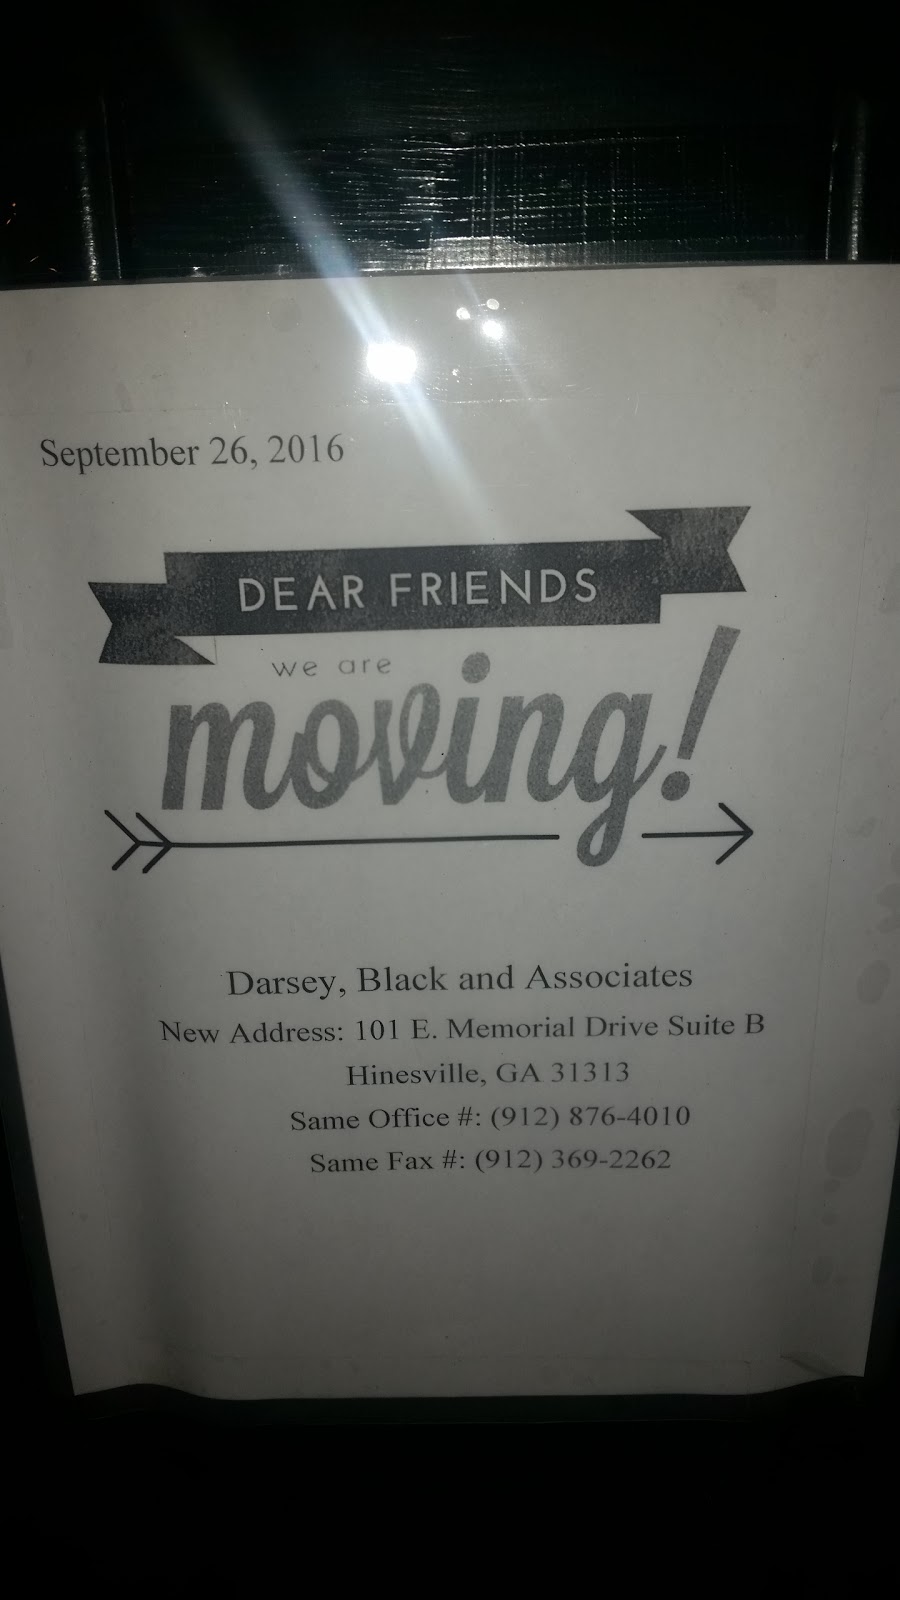 Darsey Black and Associates 101 East Memorial Drive